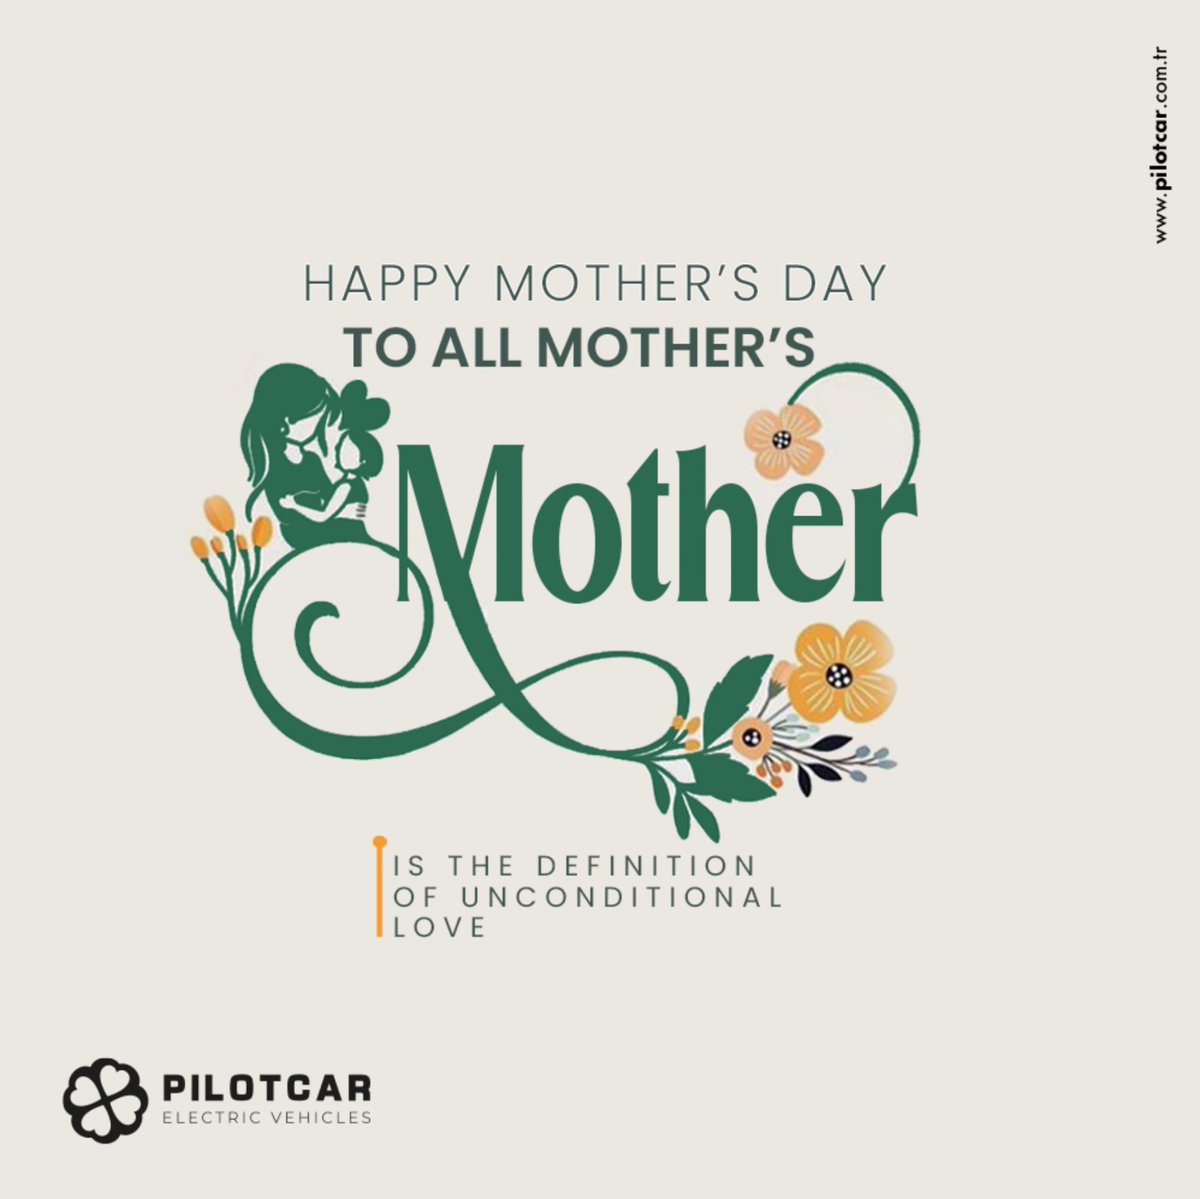 Anneler Günü Kutlu Olsun! #AnnelerGünü Happy Mothers Day! #MothersDay